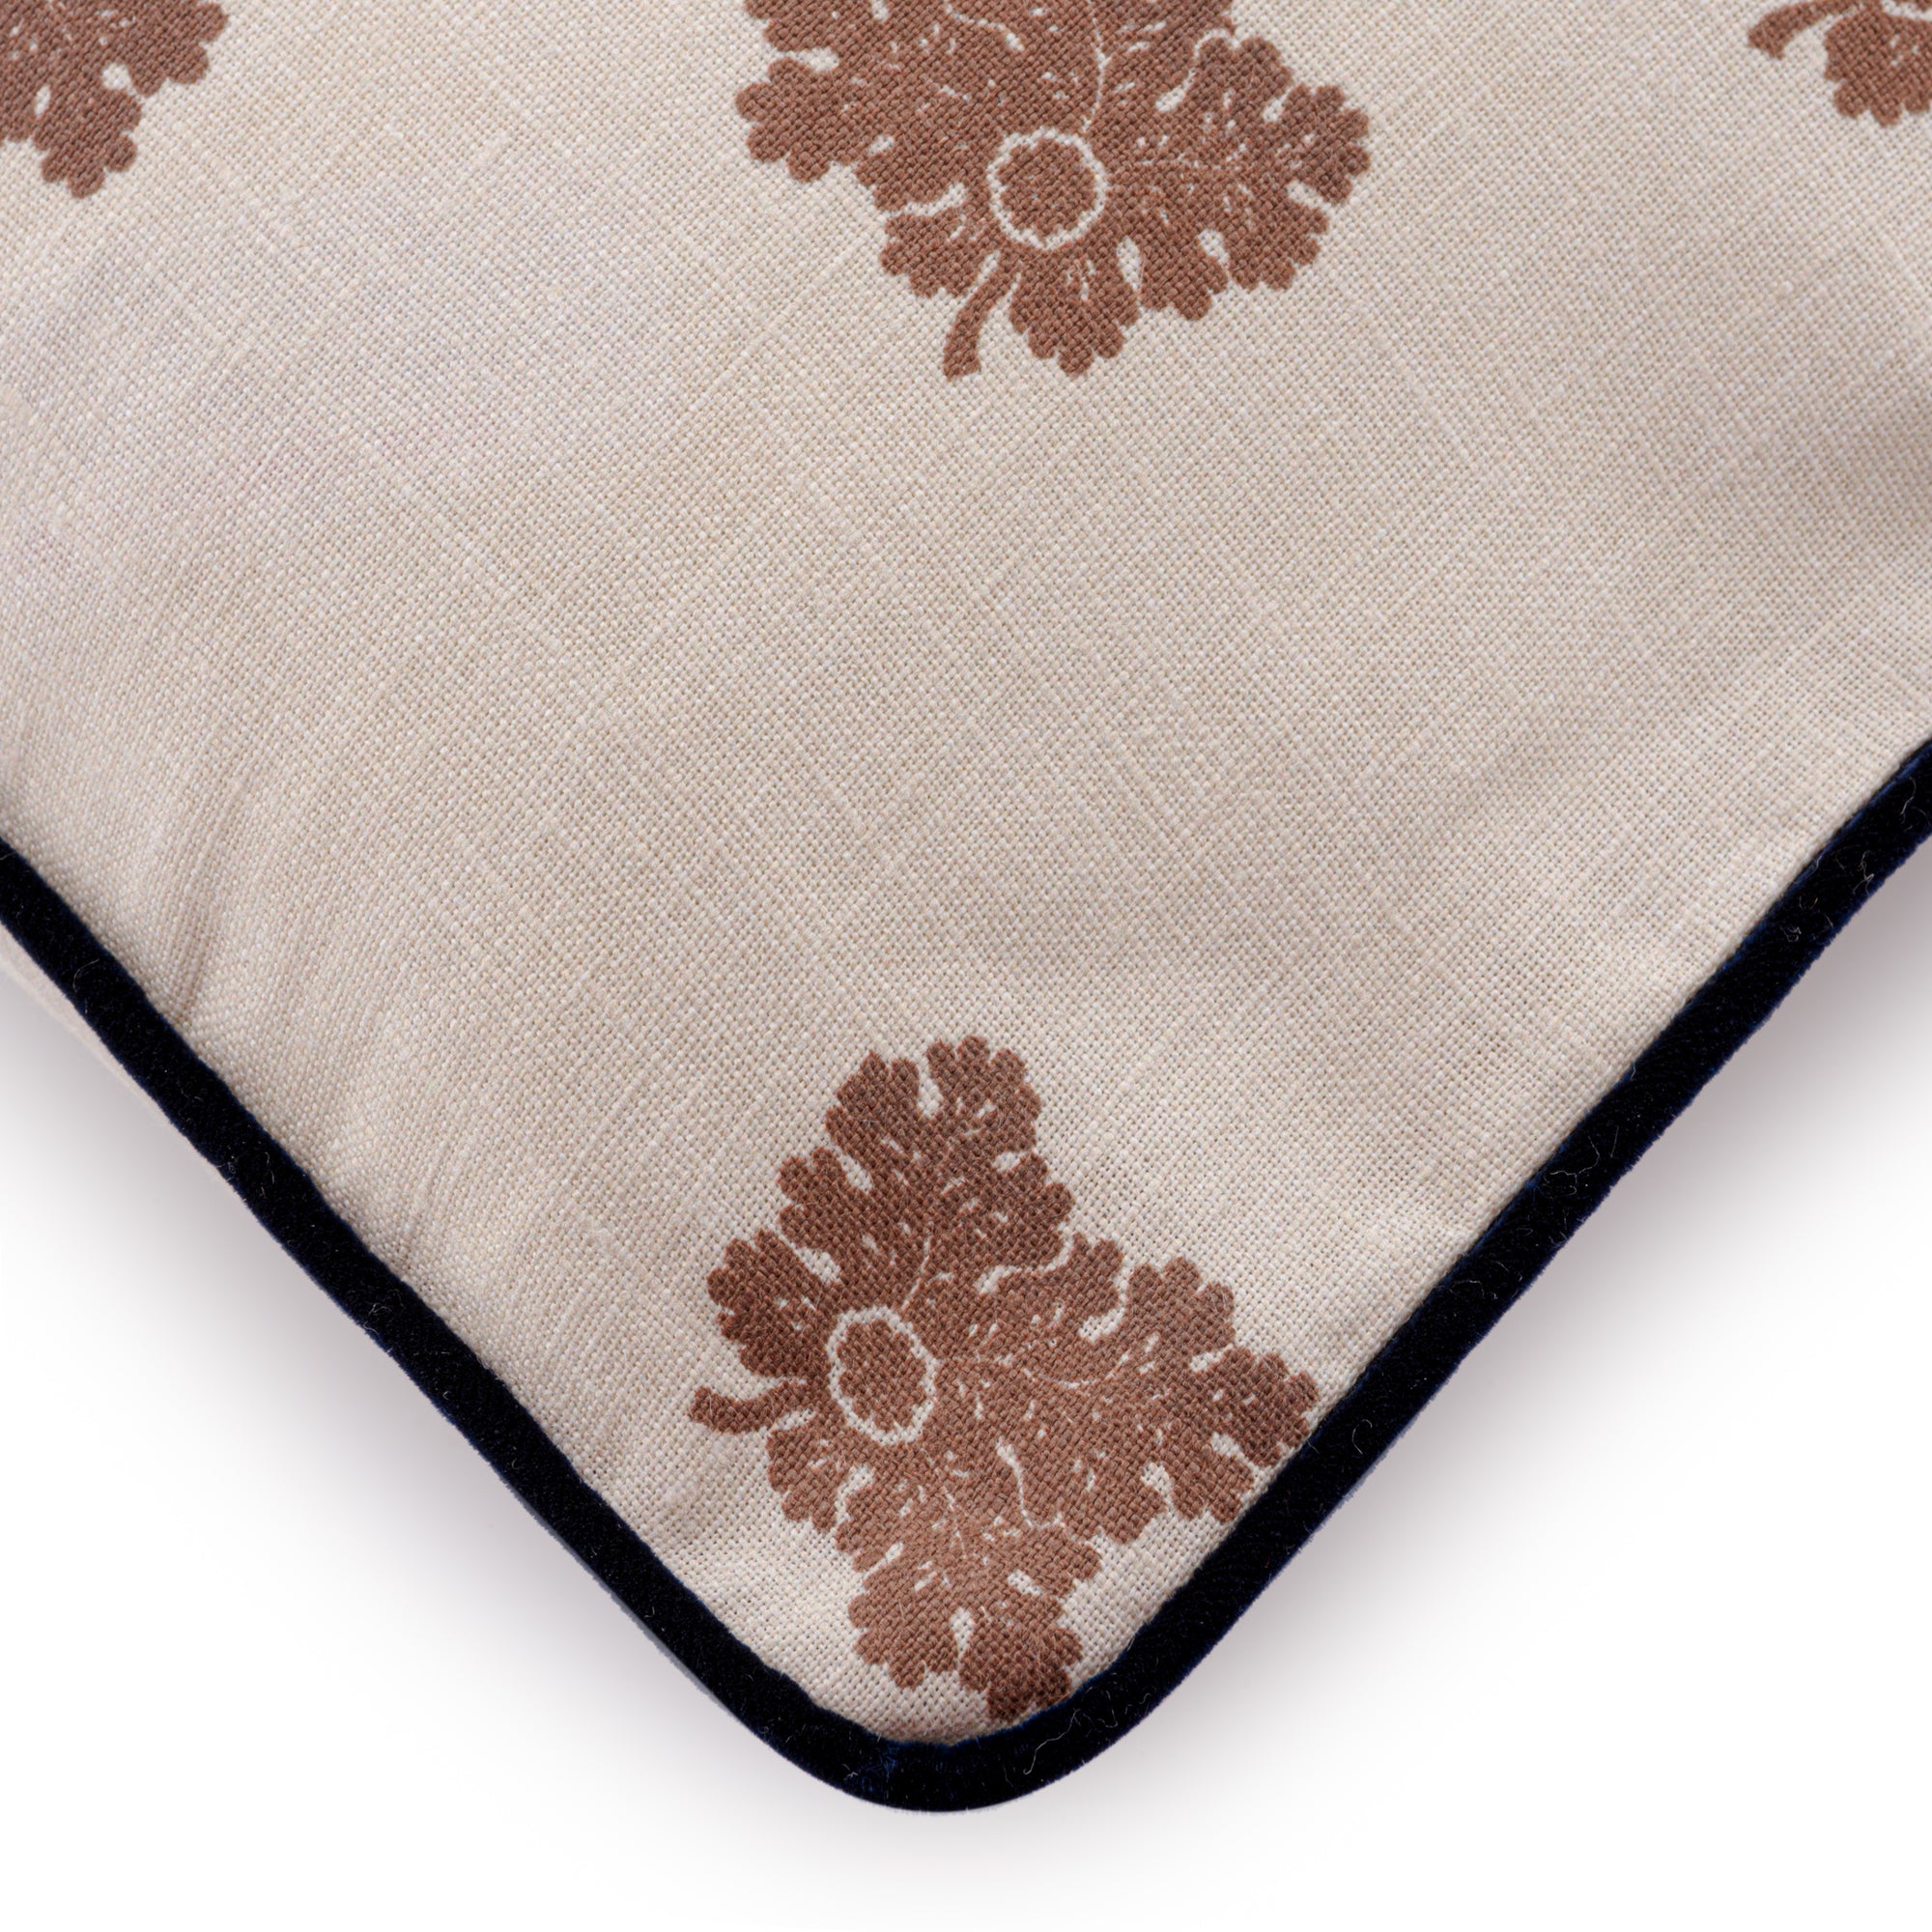 D'Arbres Walnut Linen Velvet Piped Cushion | 50 x 50cm